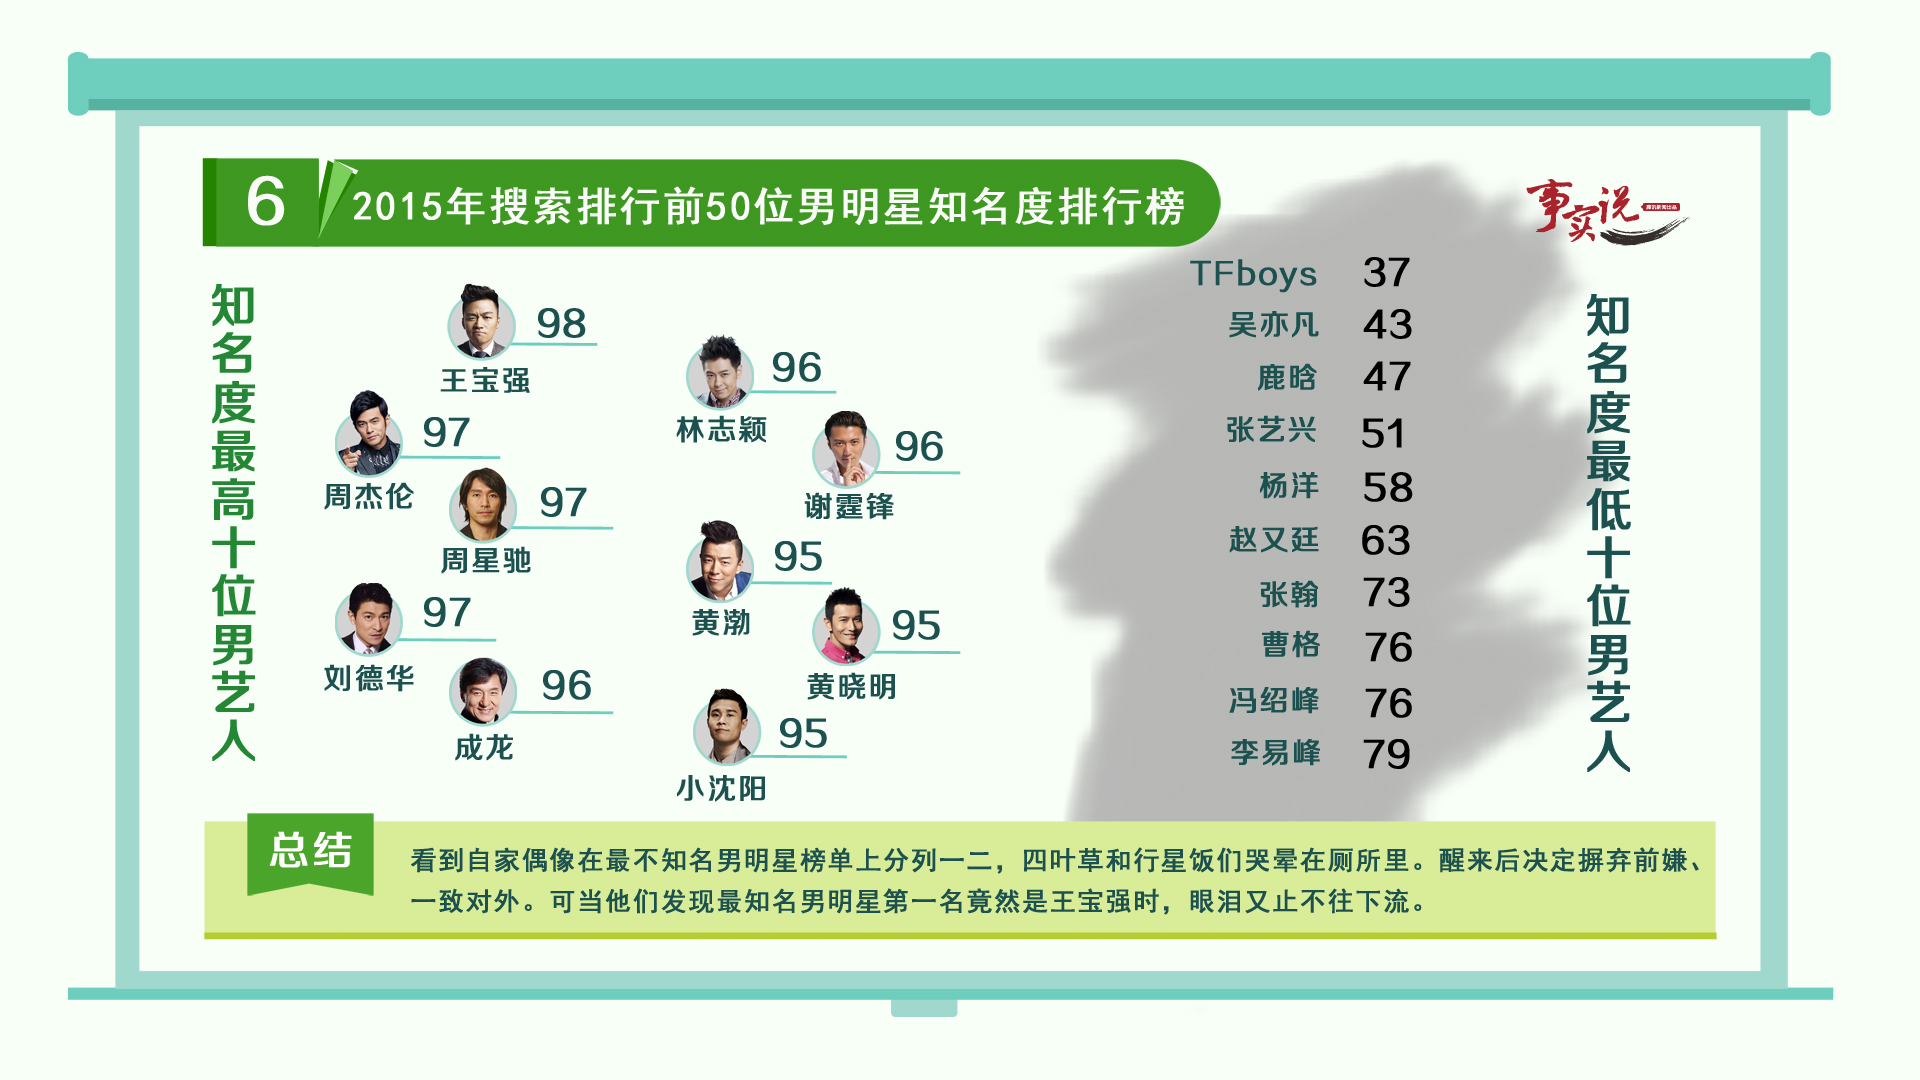 据《事实说》调查显示，王宝强是中国知名度最高的男明星